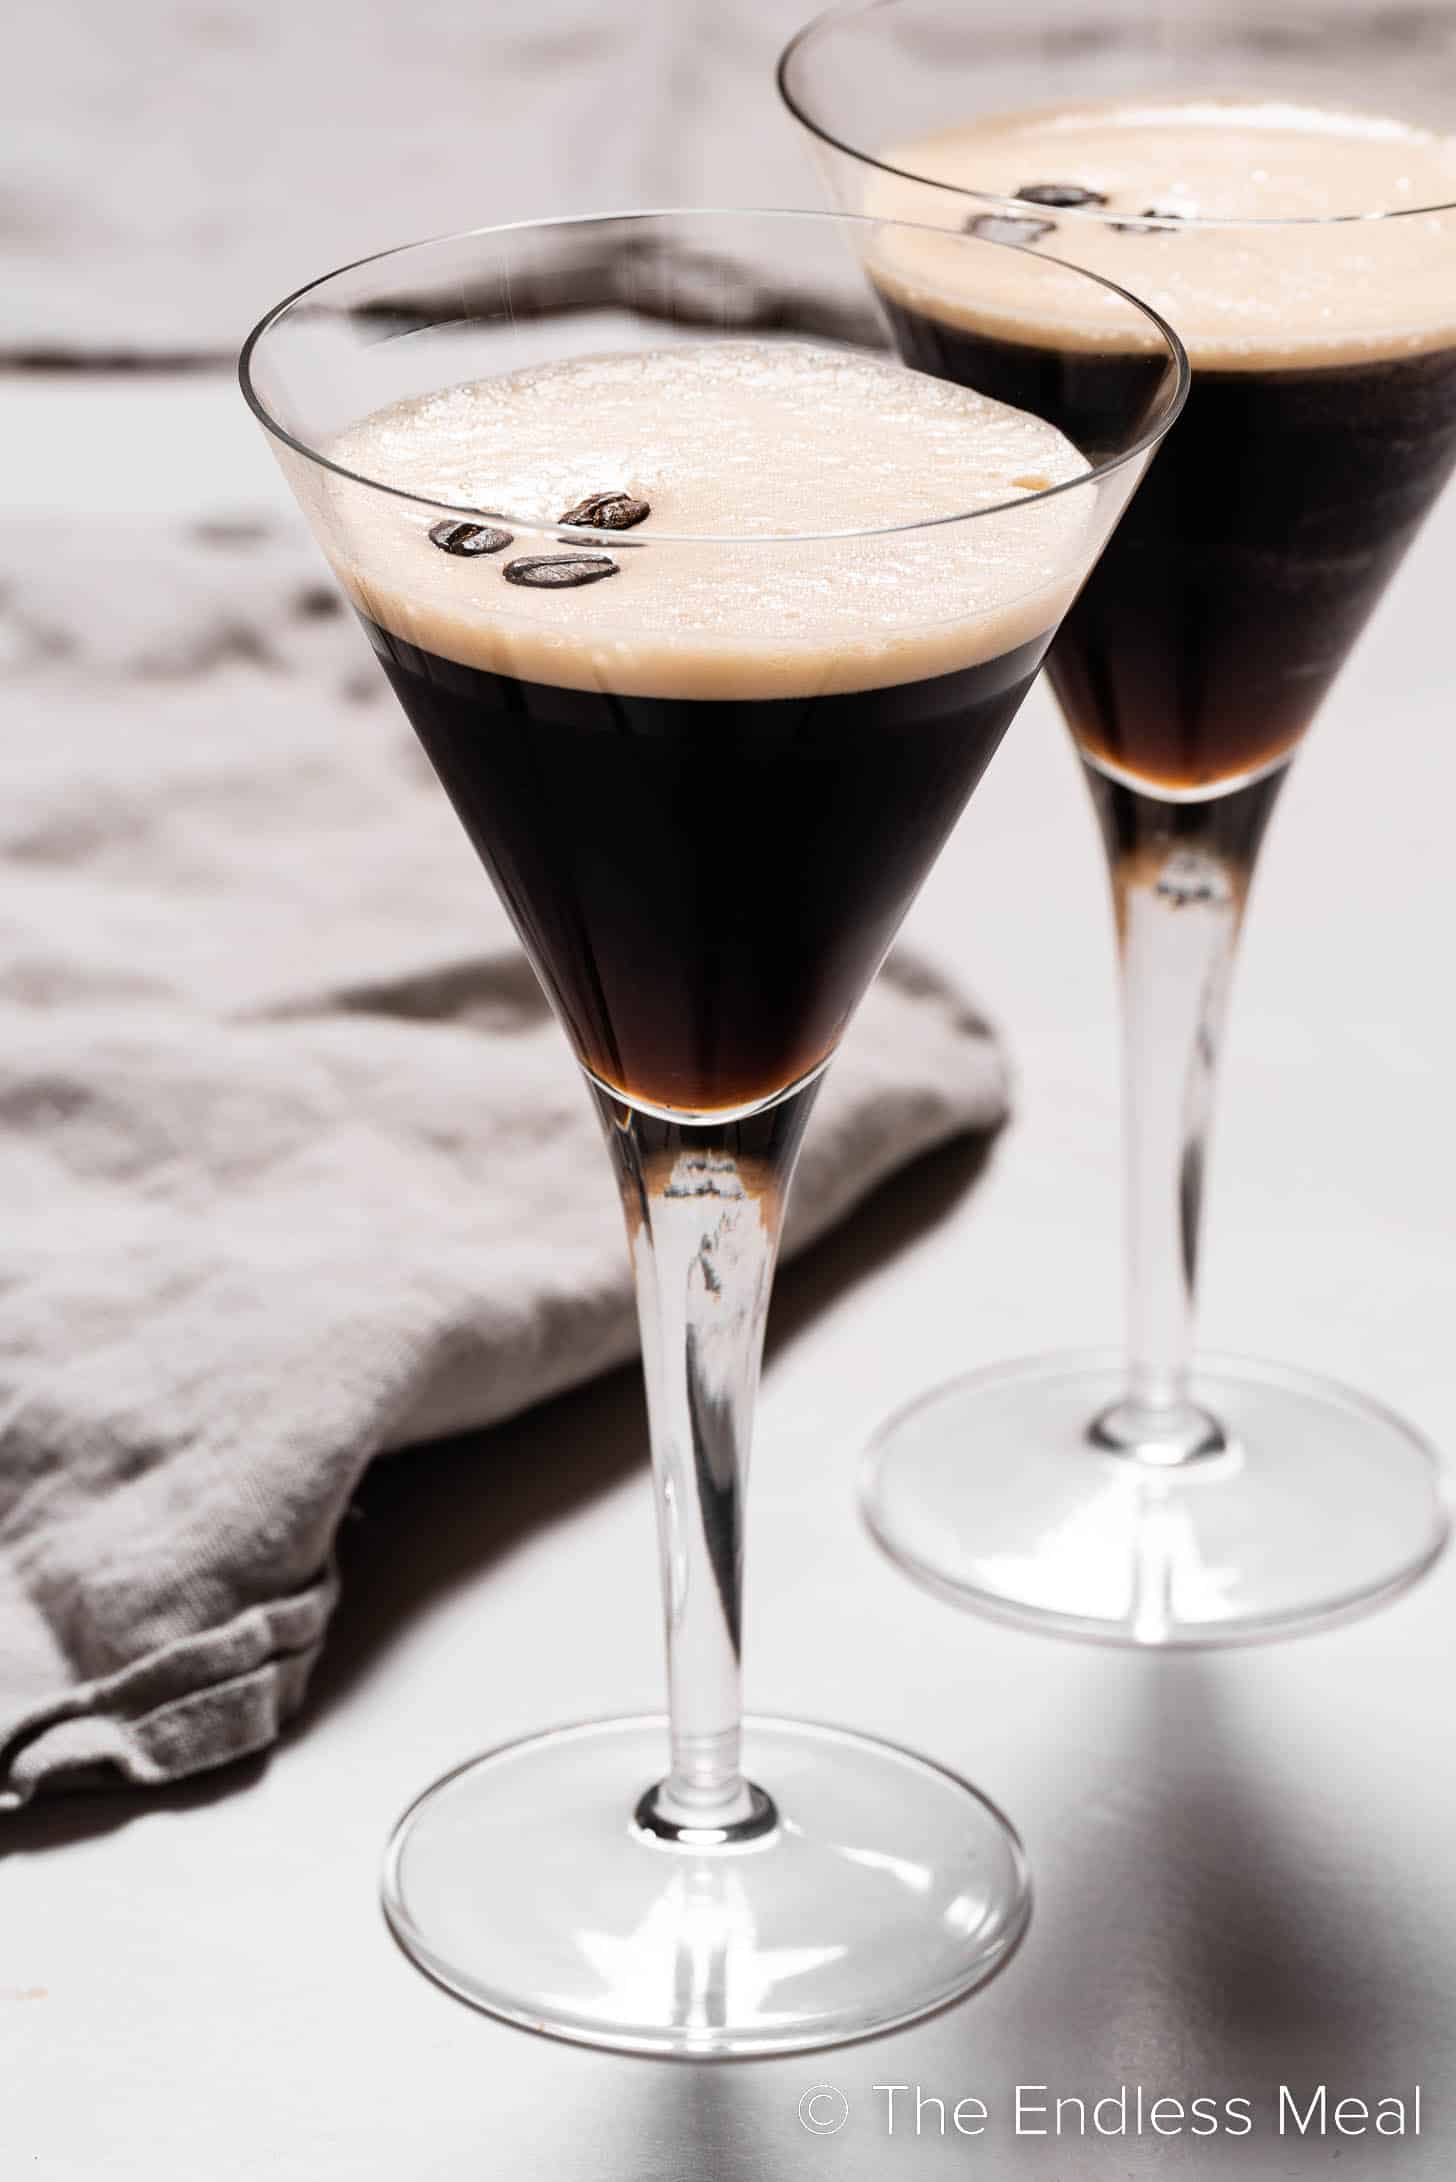 Two martini glasses with this espresso martini recipe